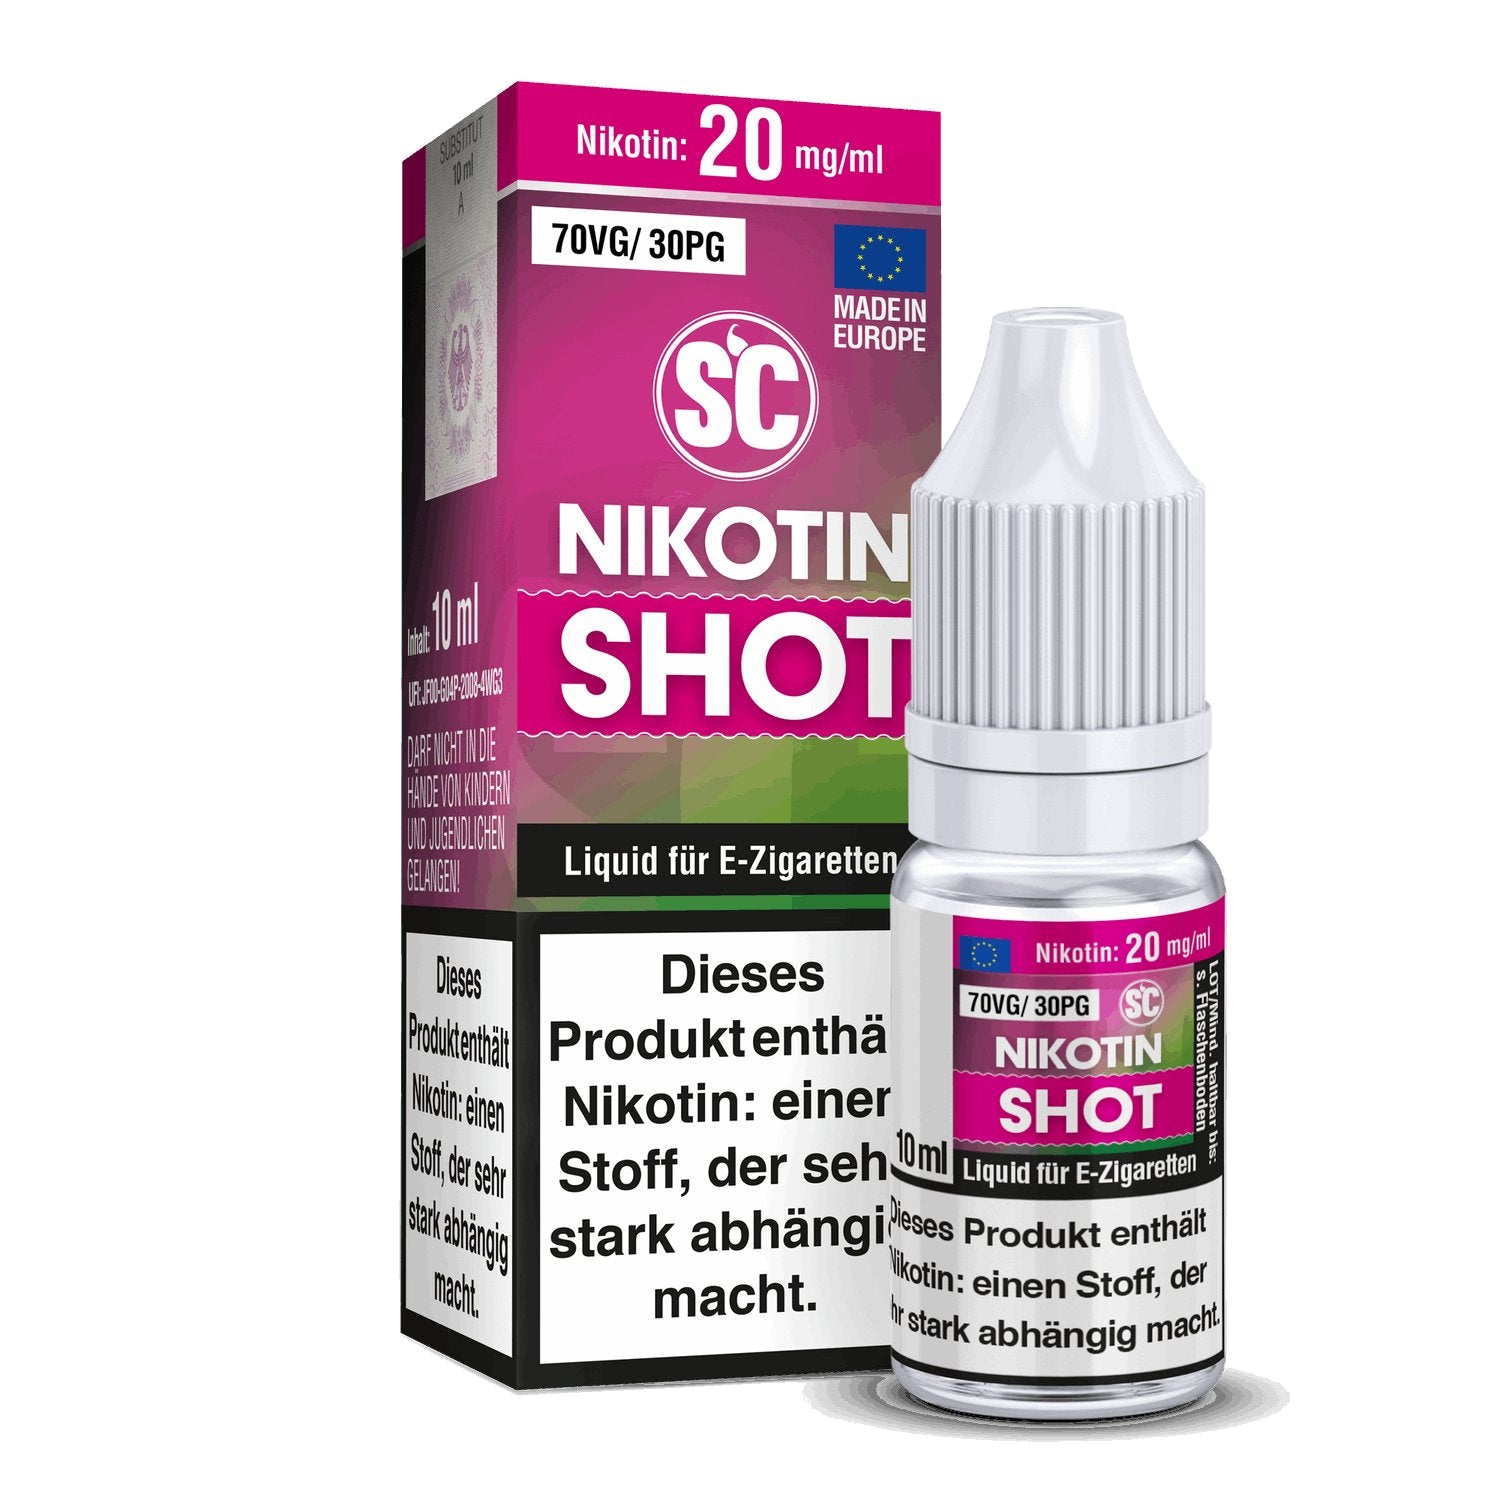 SC - Nikotin Shot - 10ml (70VG/30PG) - 70VG / 30PG 1er Packung 20 mg/ml- Vapes4you